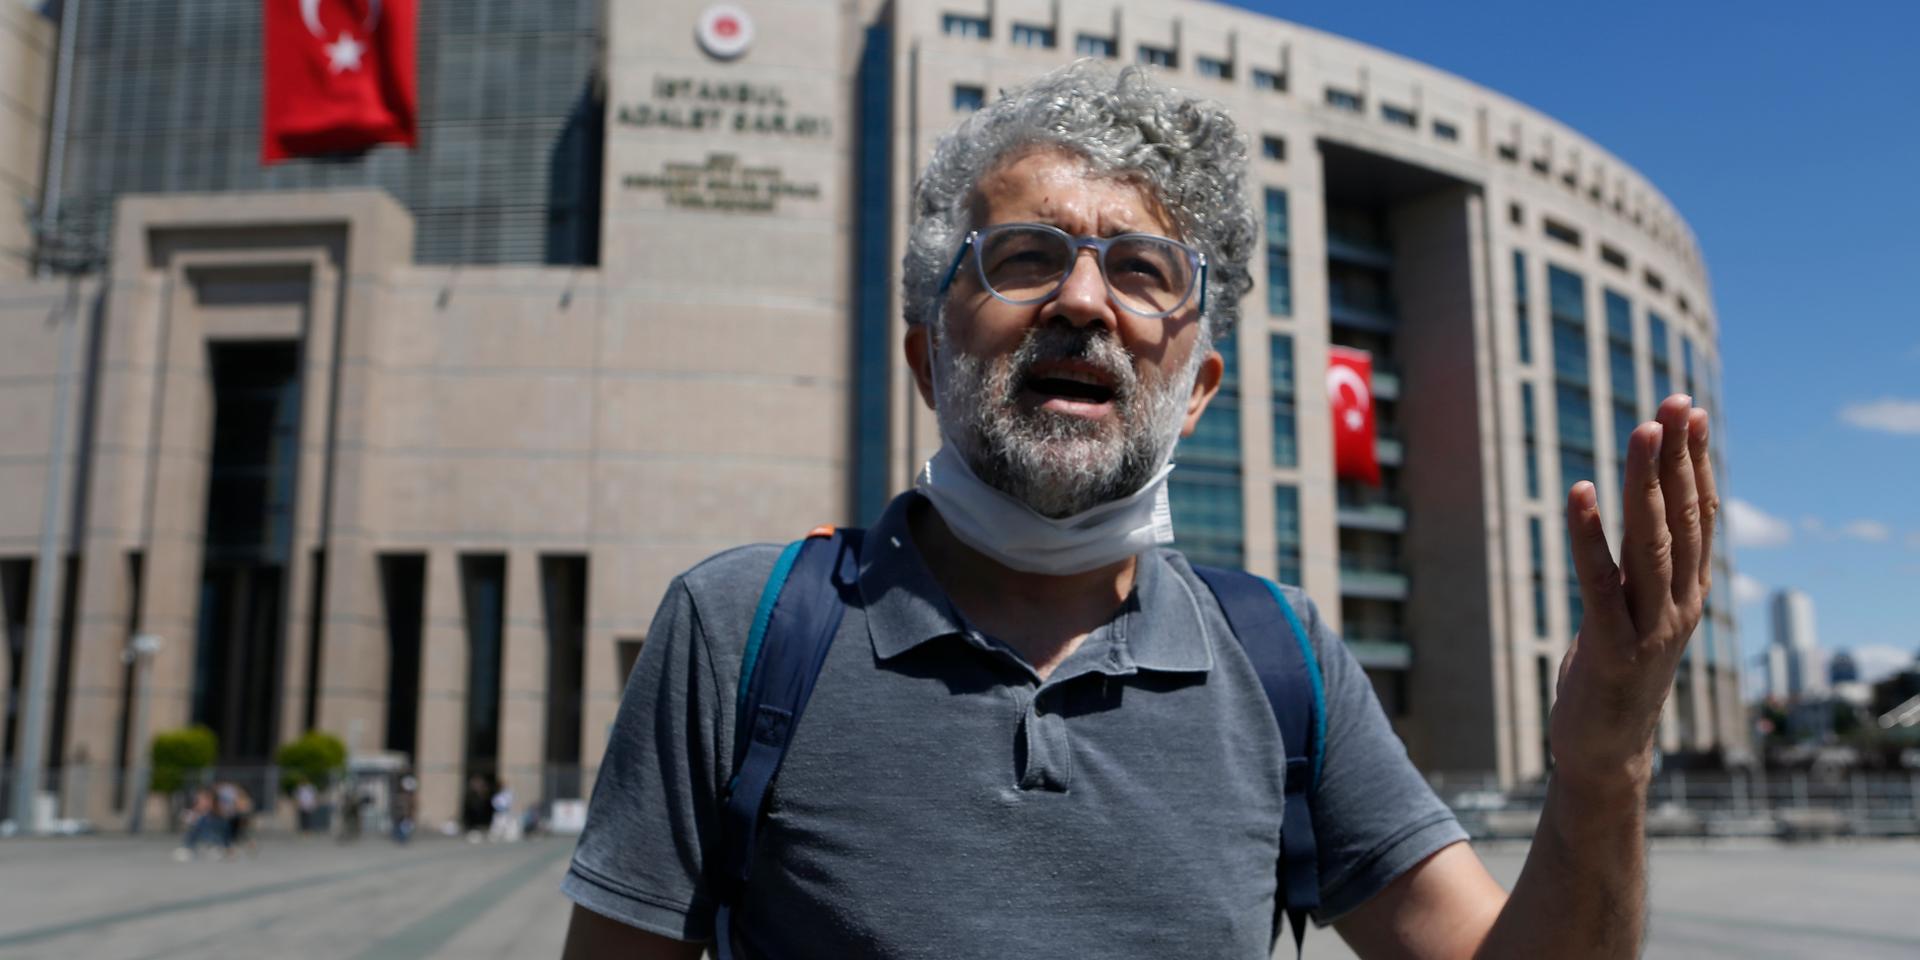 Erol Önderoğlu från Reportrar utan gränser kritiserar häktningen. Arkivbild.